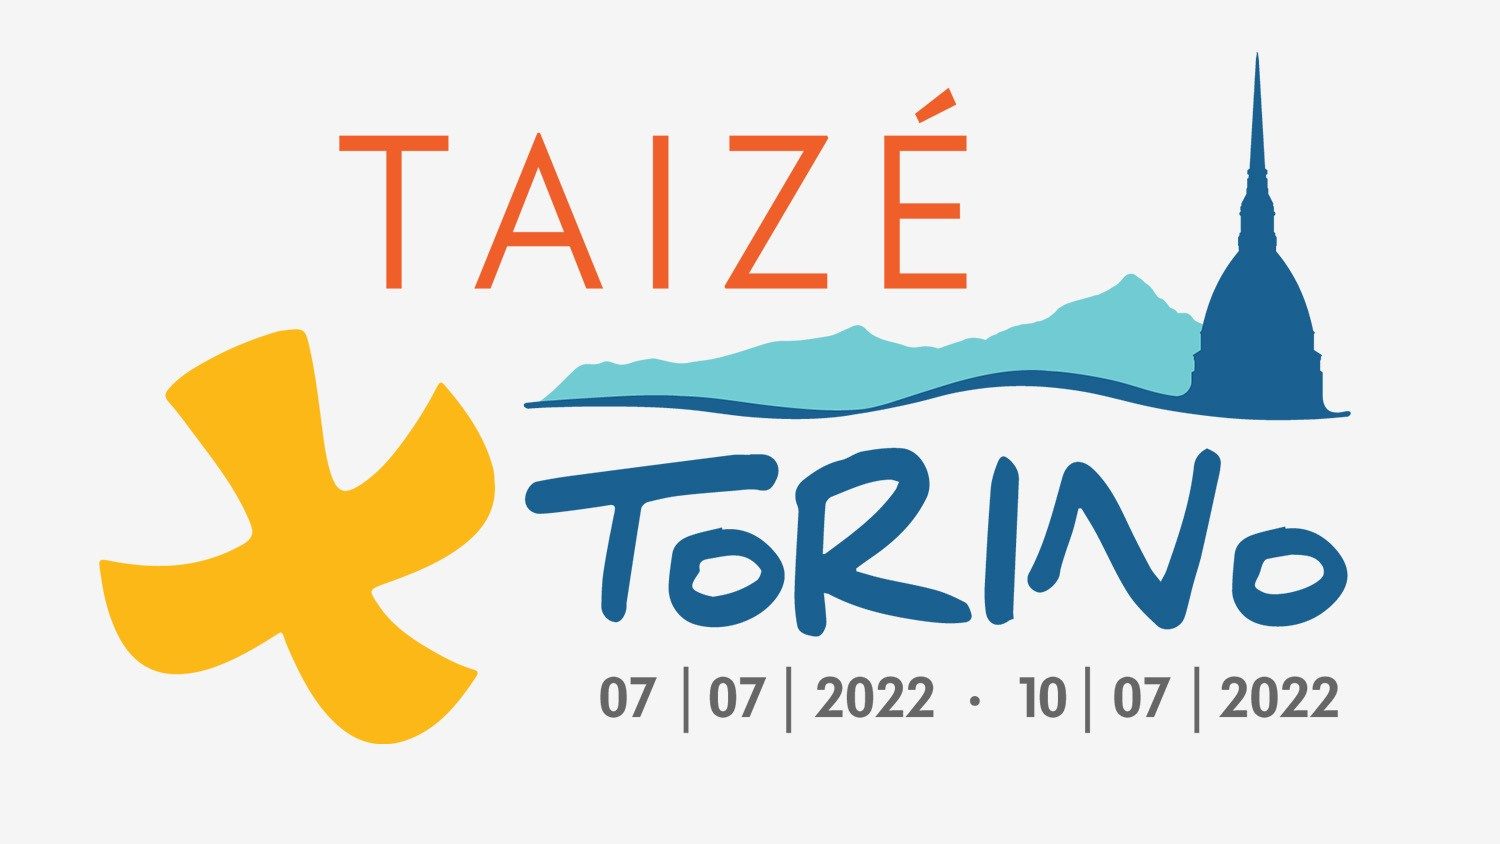 Cuộc gặp gỡ Taizé châu Âu lần thứ 43 tại Torino